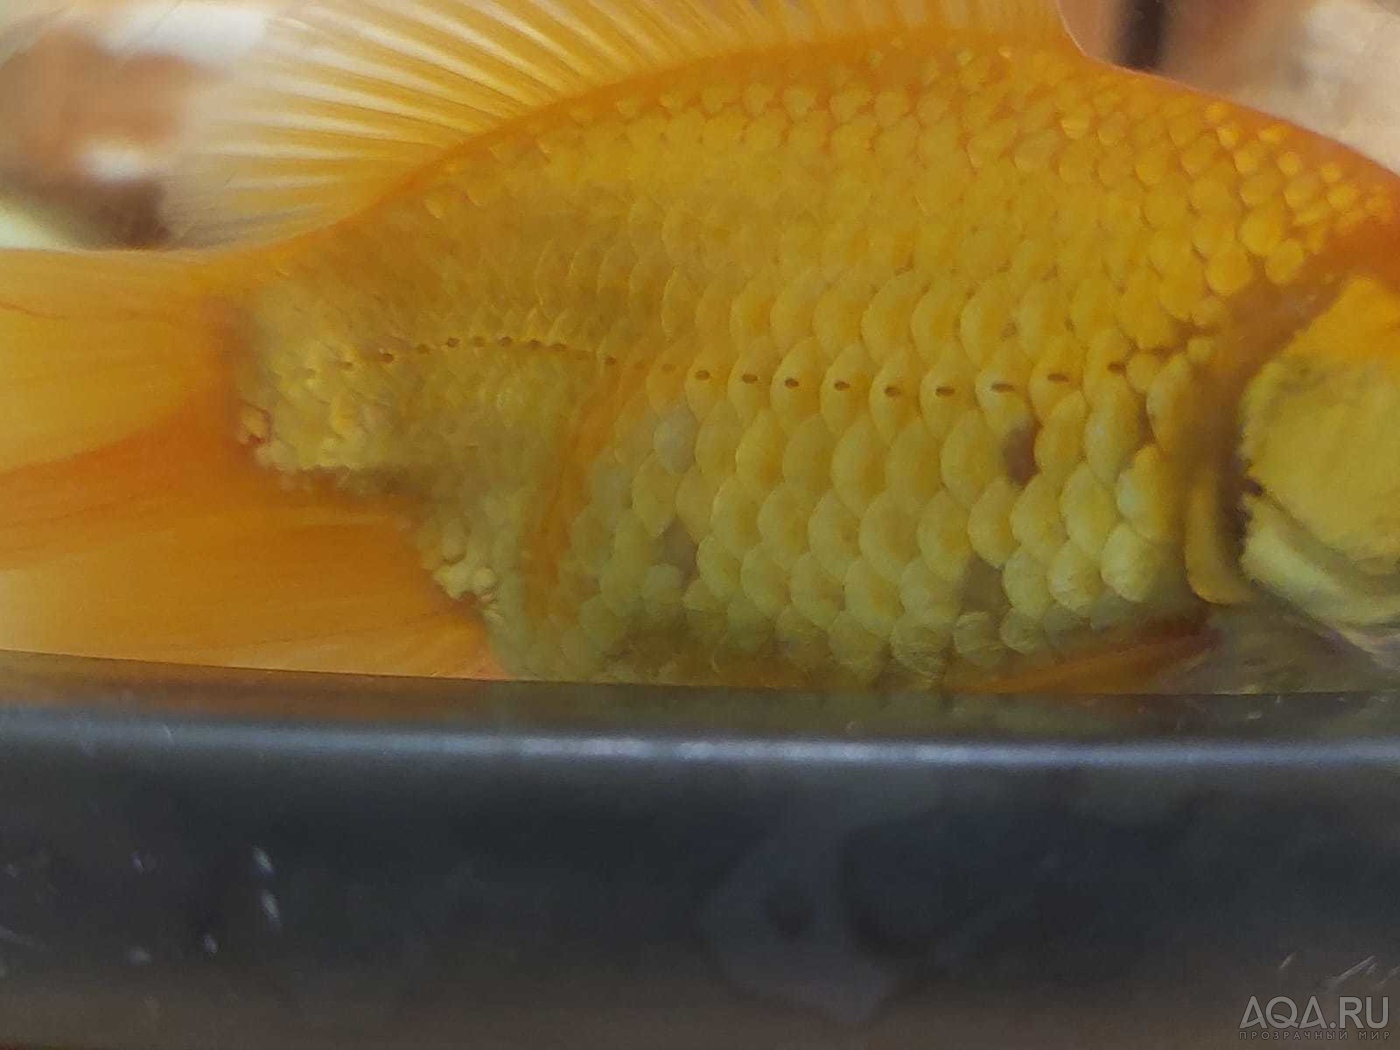 У золотой рыбки выпадает чешуя.